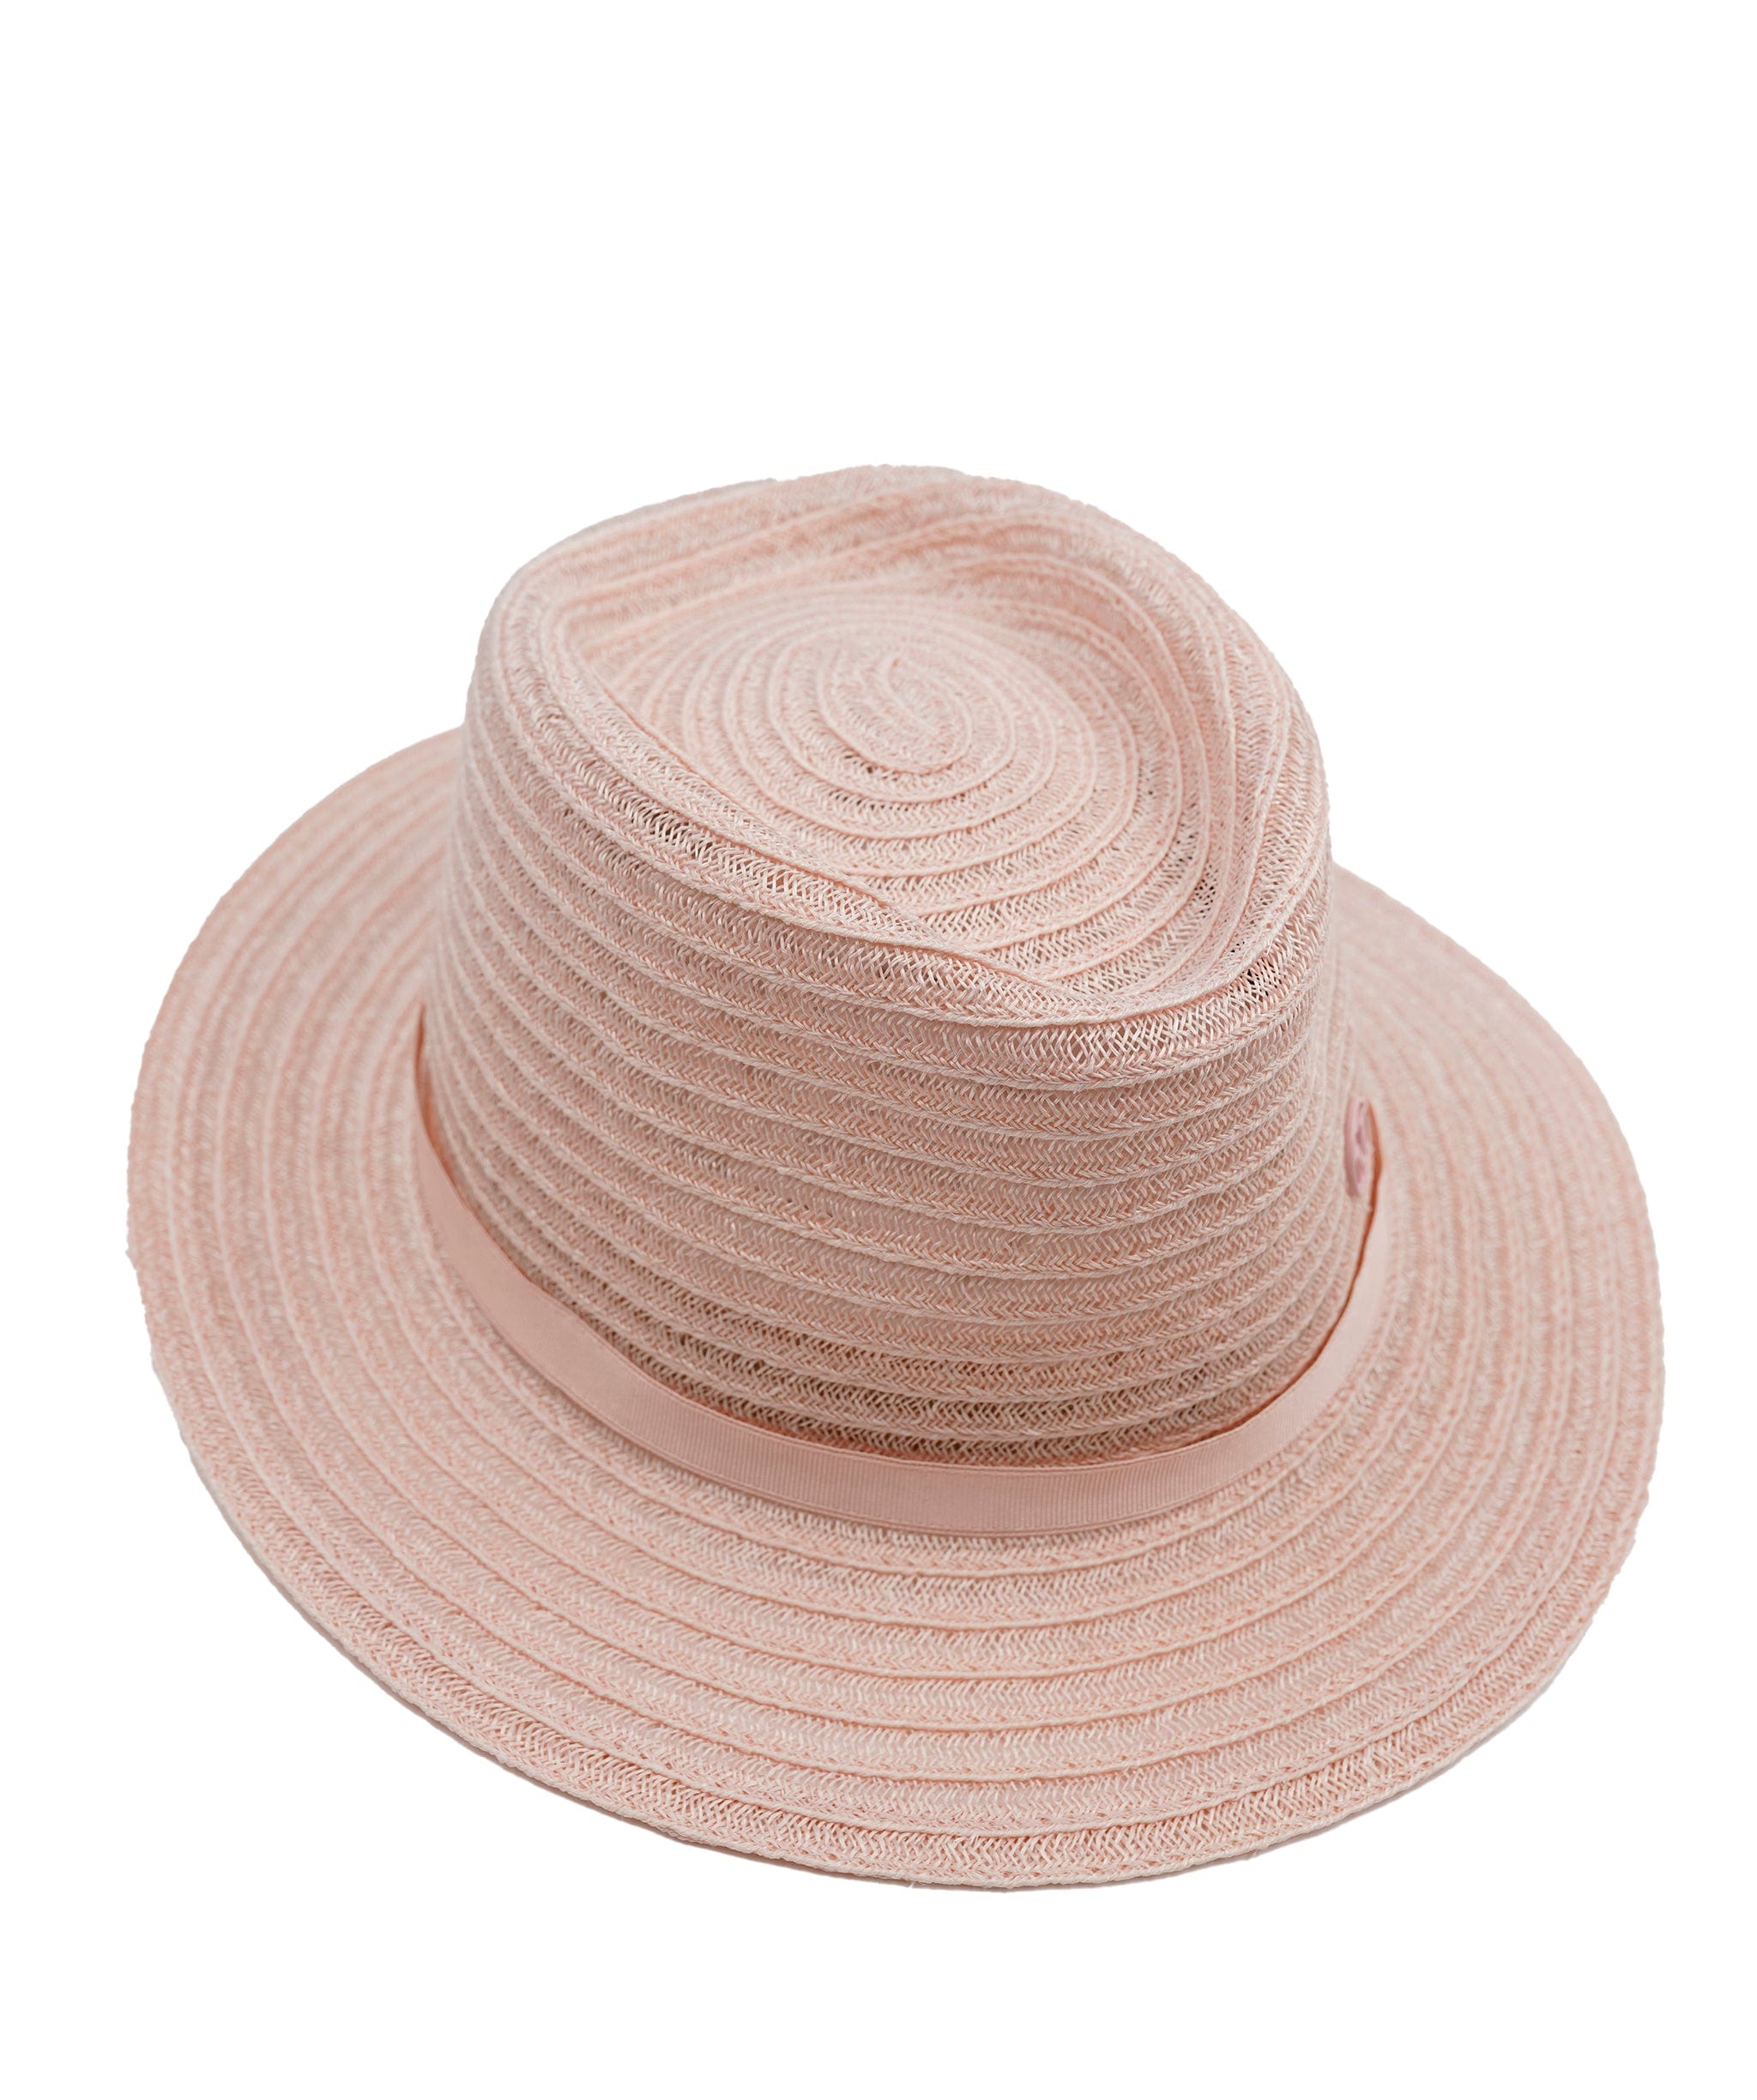 Maison Michel Maison Michel pink straw André hat - ASL5080